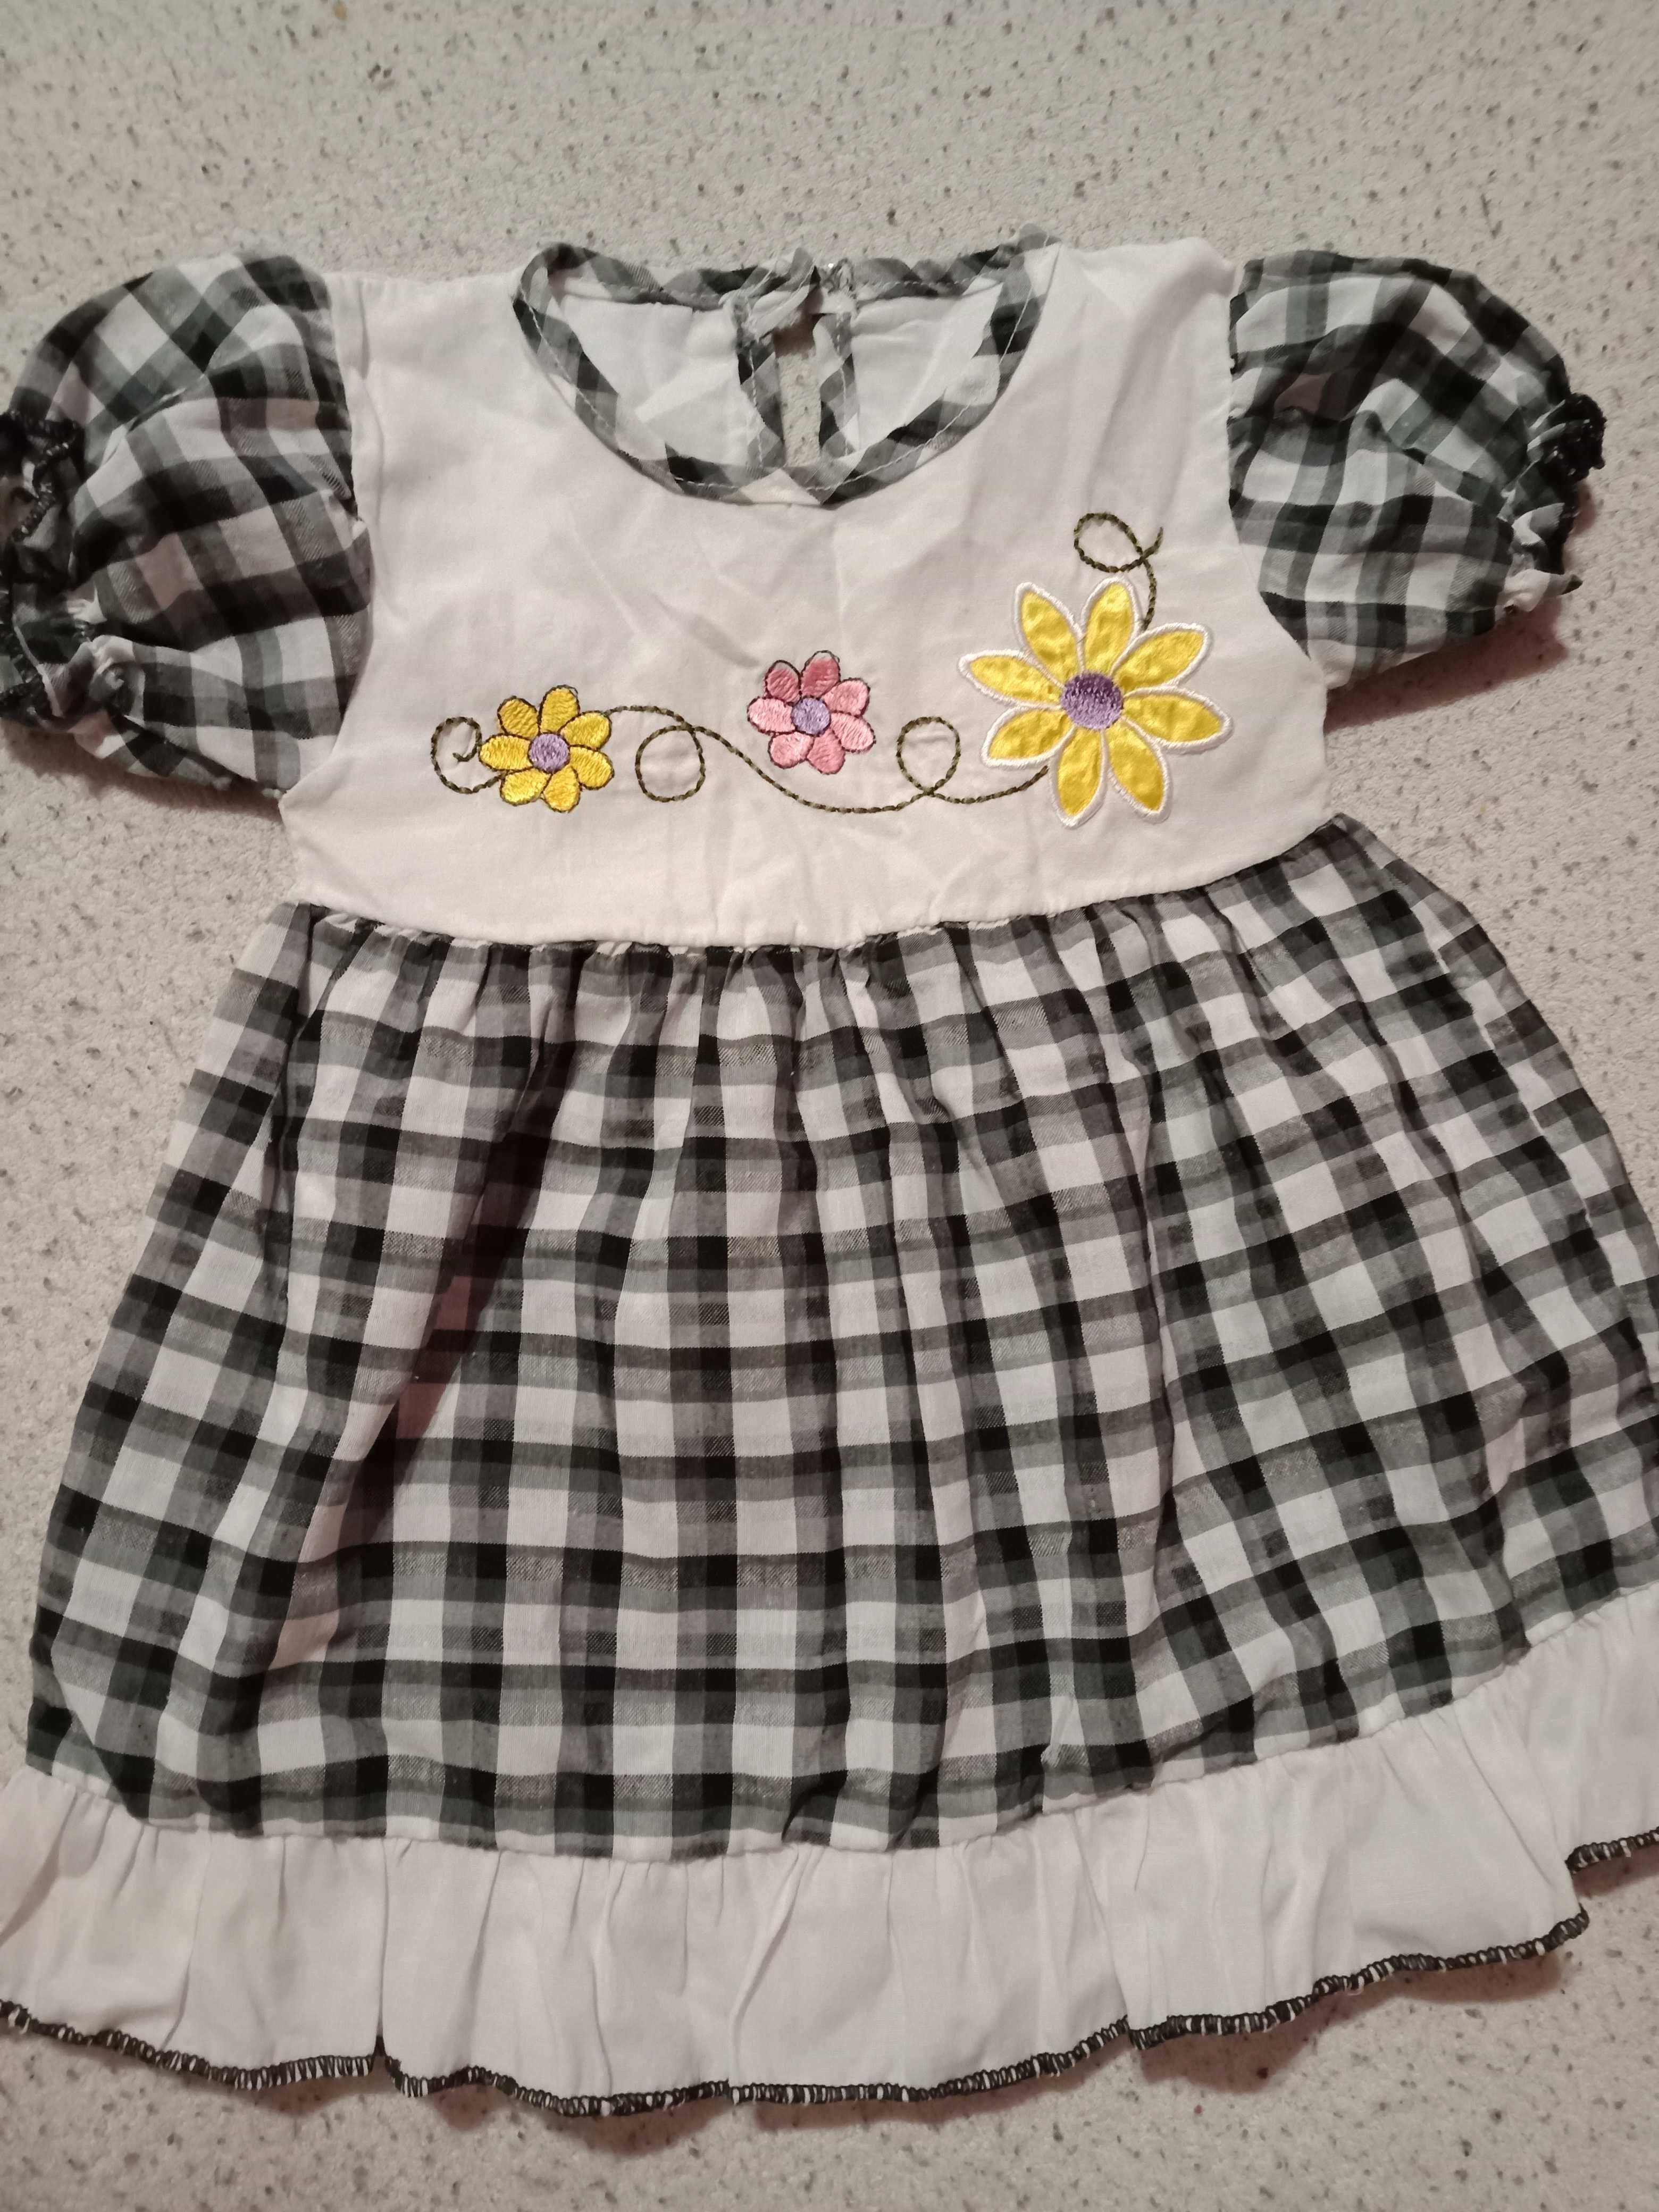 Biała/czarna sukienka z krótkim dla dziewczynki w kratkę z kwiatami 74